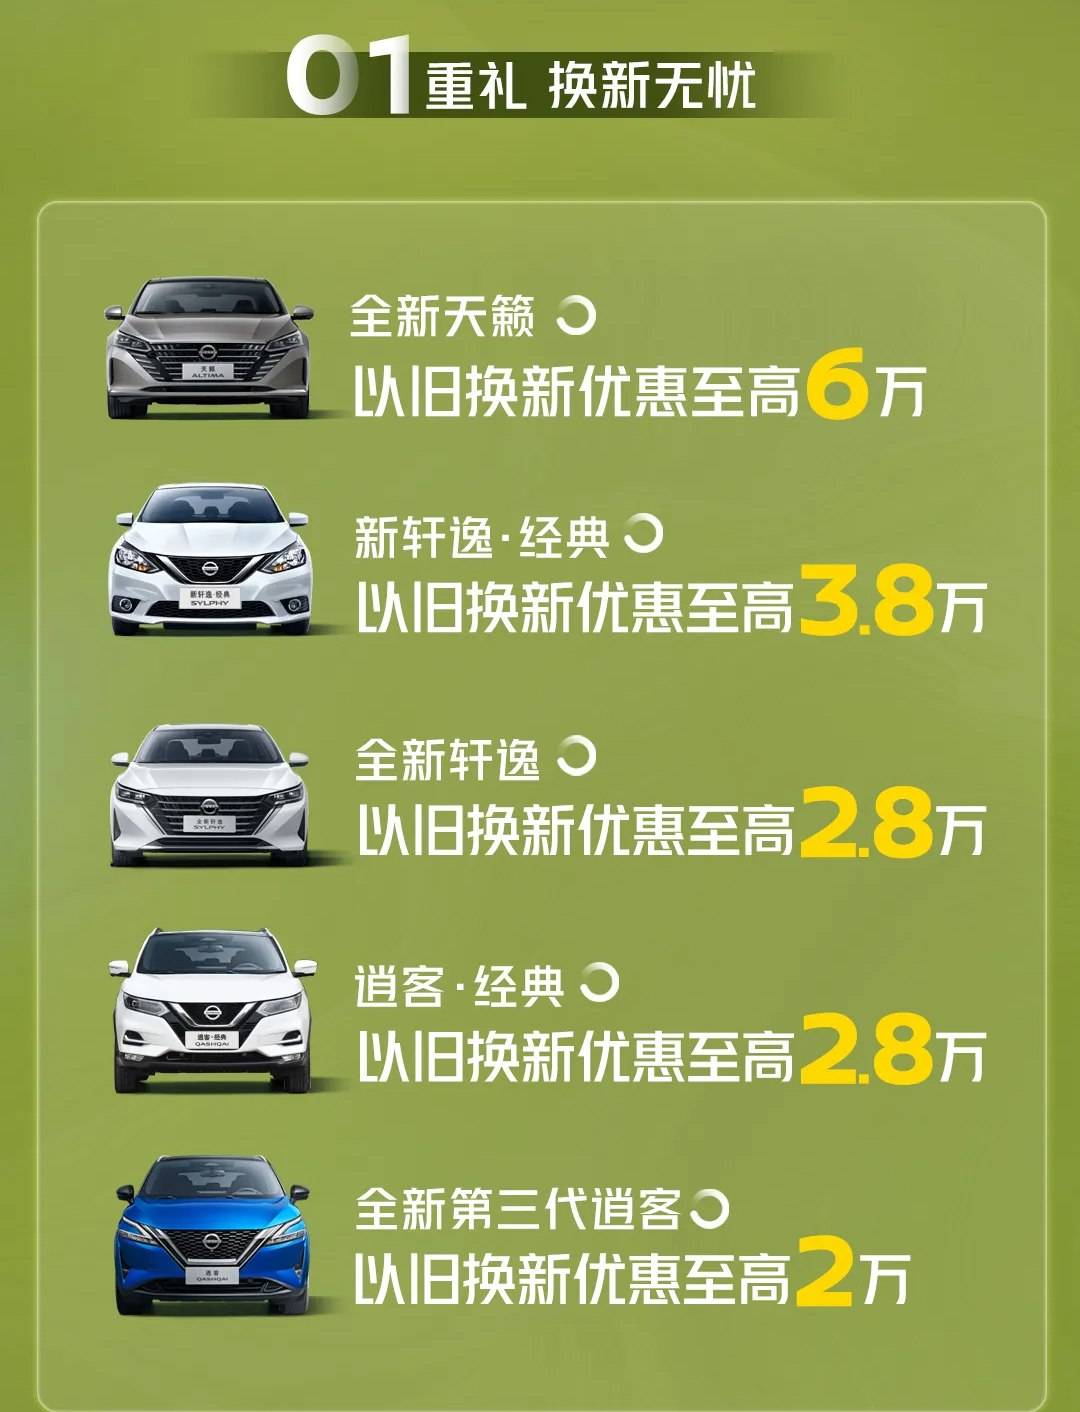 以旧换新优惠最高6万袁东峰日产旗下多款车型推出福利活动_搜狐汽车_搜狐汽车。com